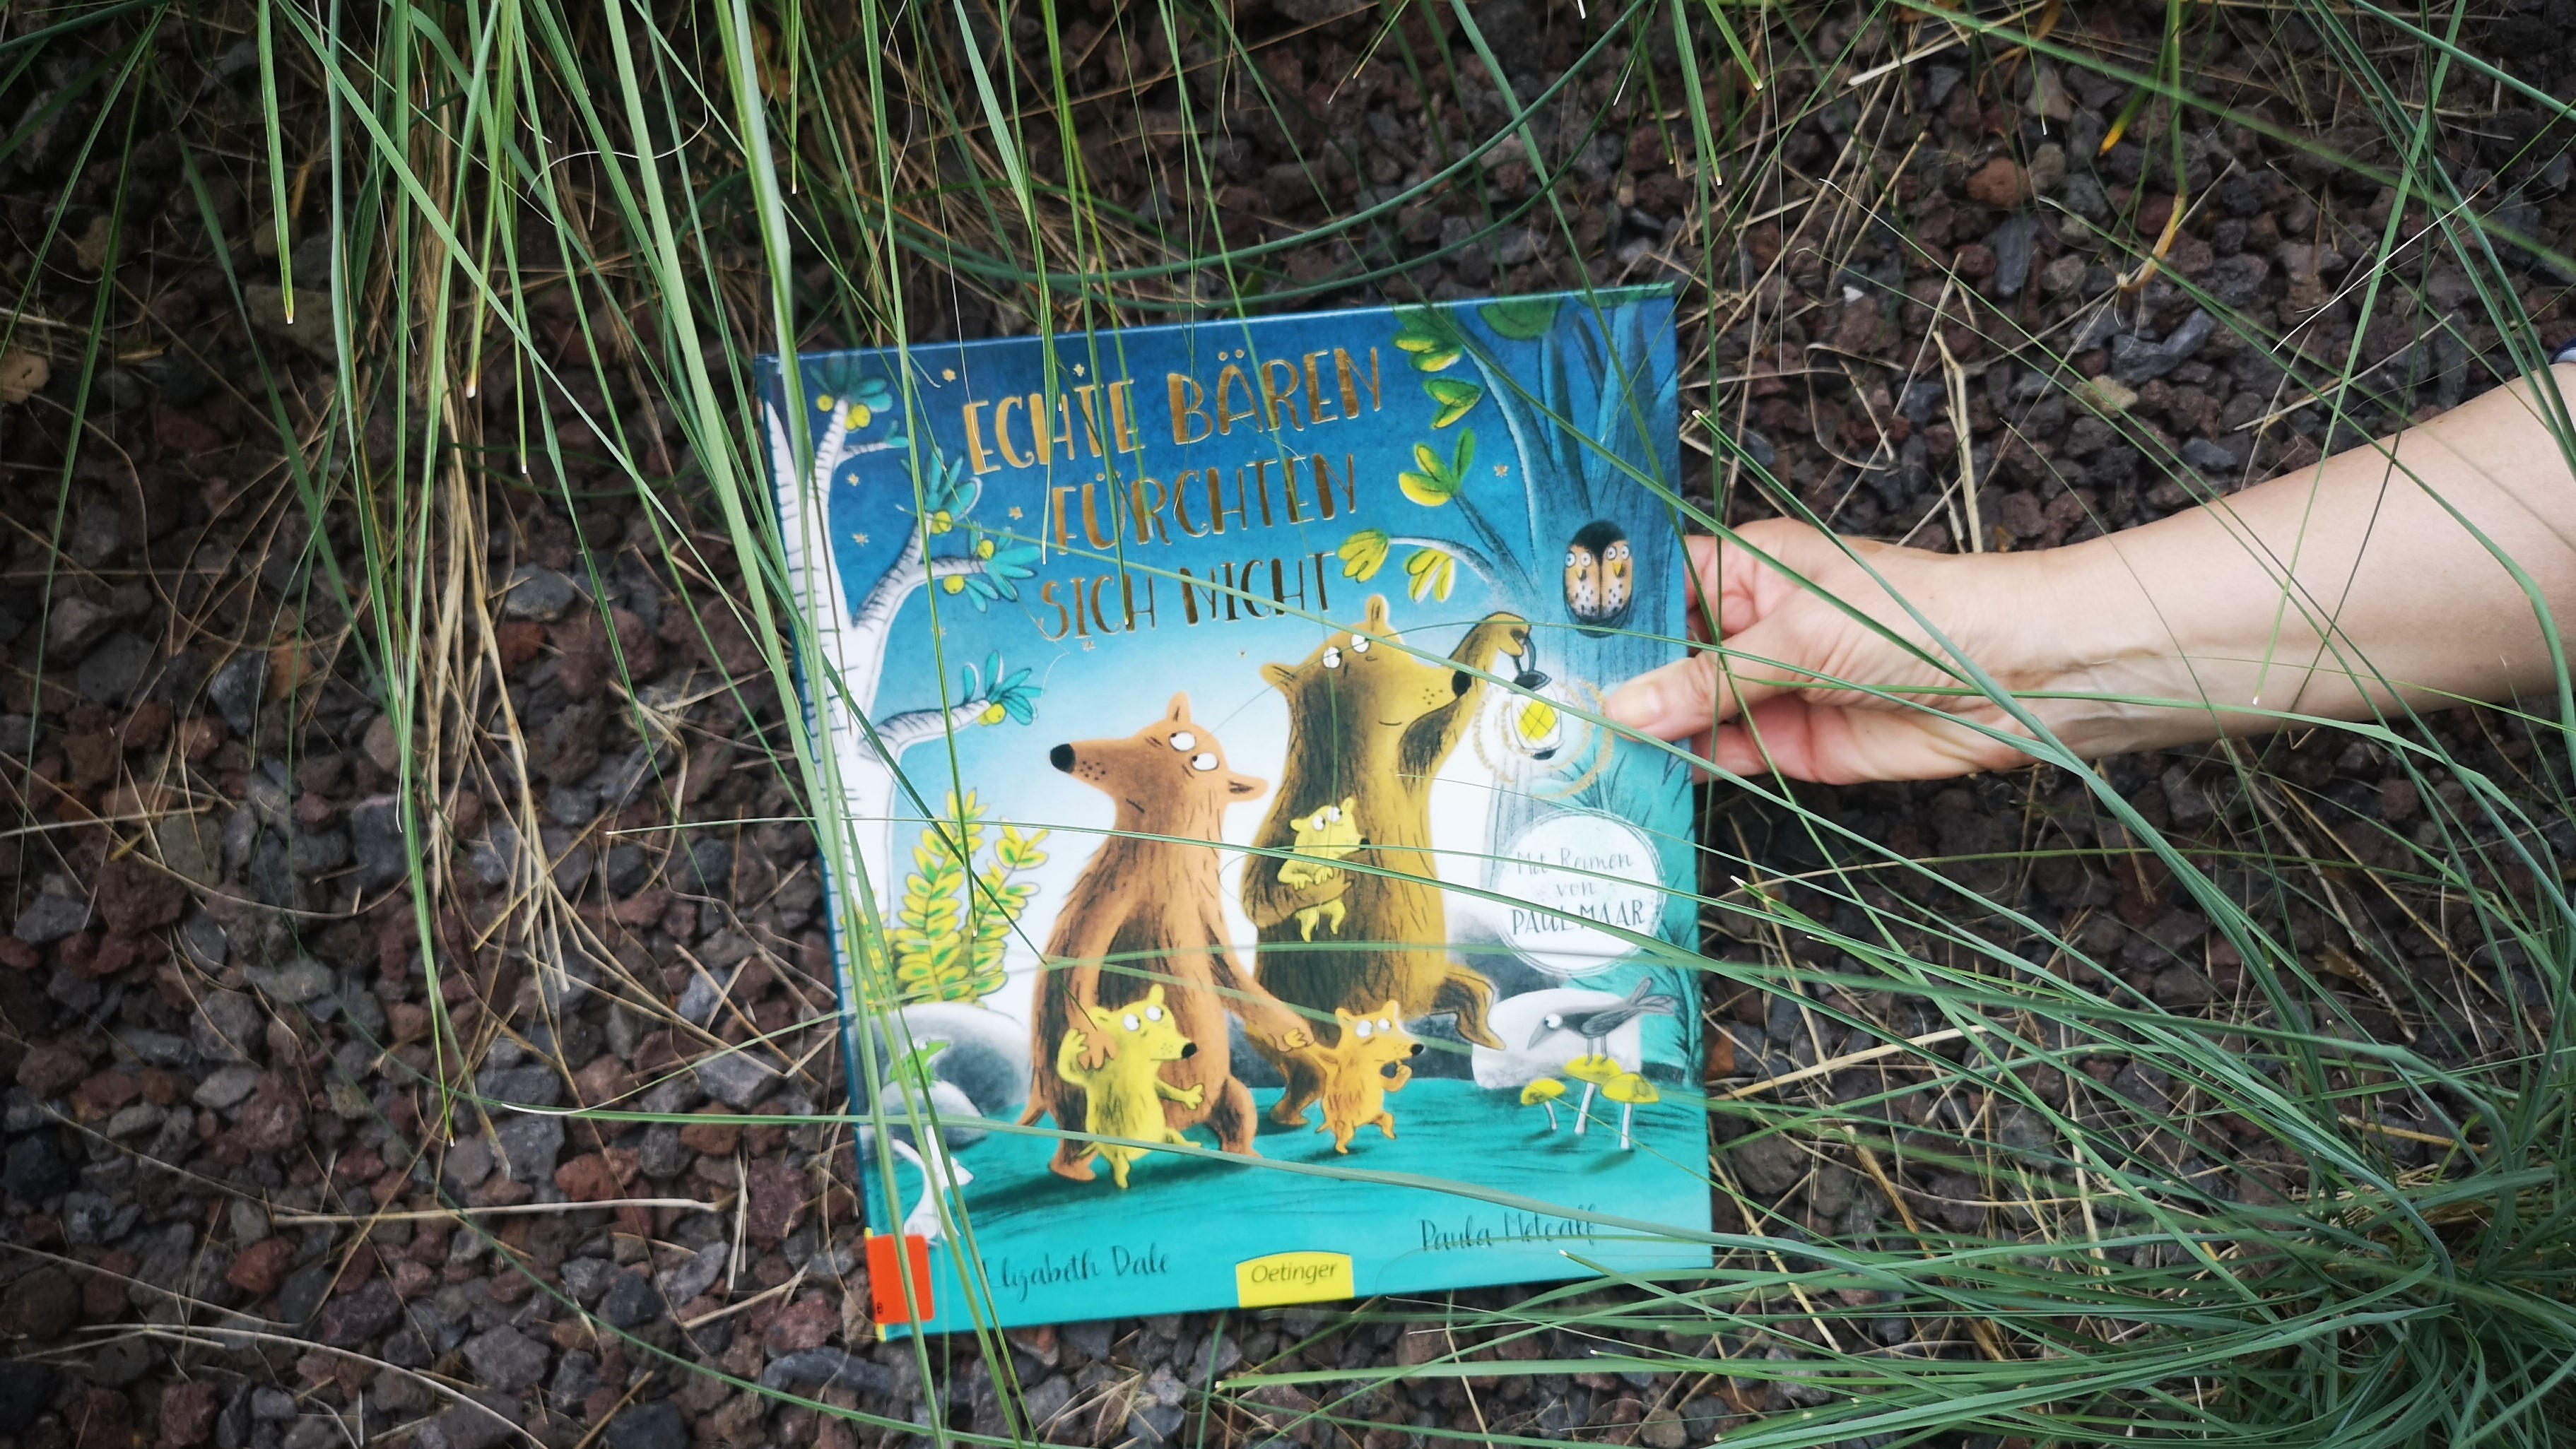 Buchcover "Echte Bären fürchten sich nicht" von Elisabeth Dale und Paula Metcalf 